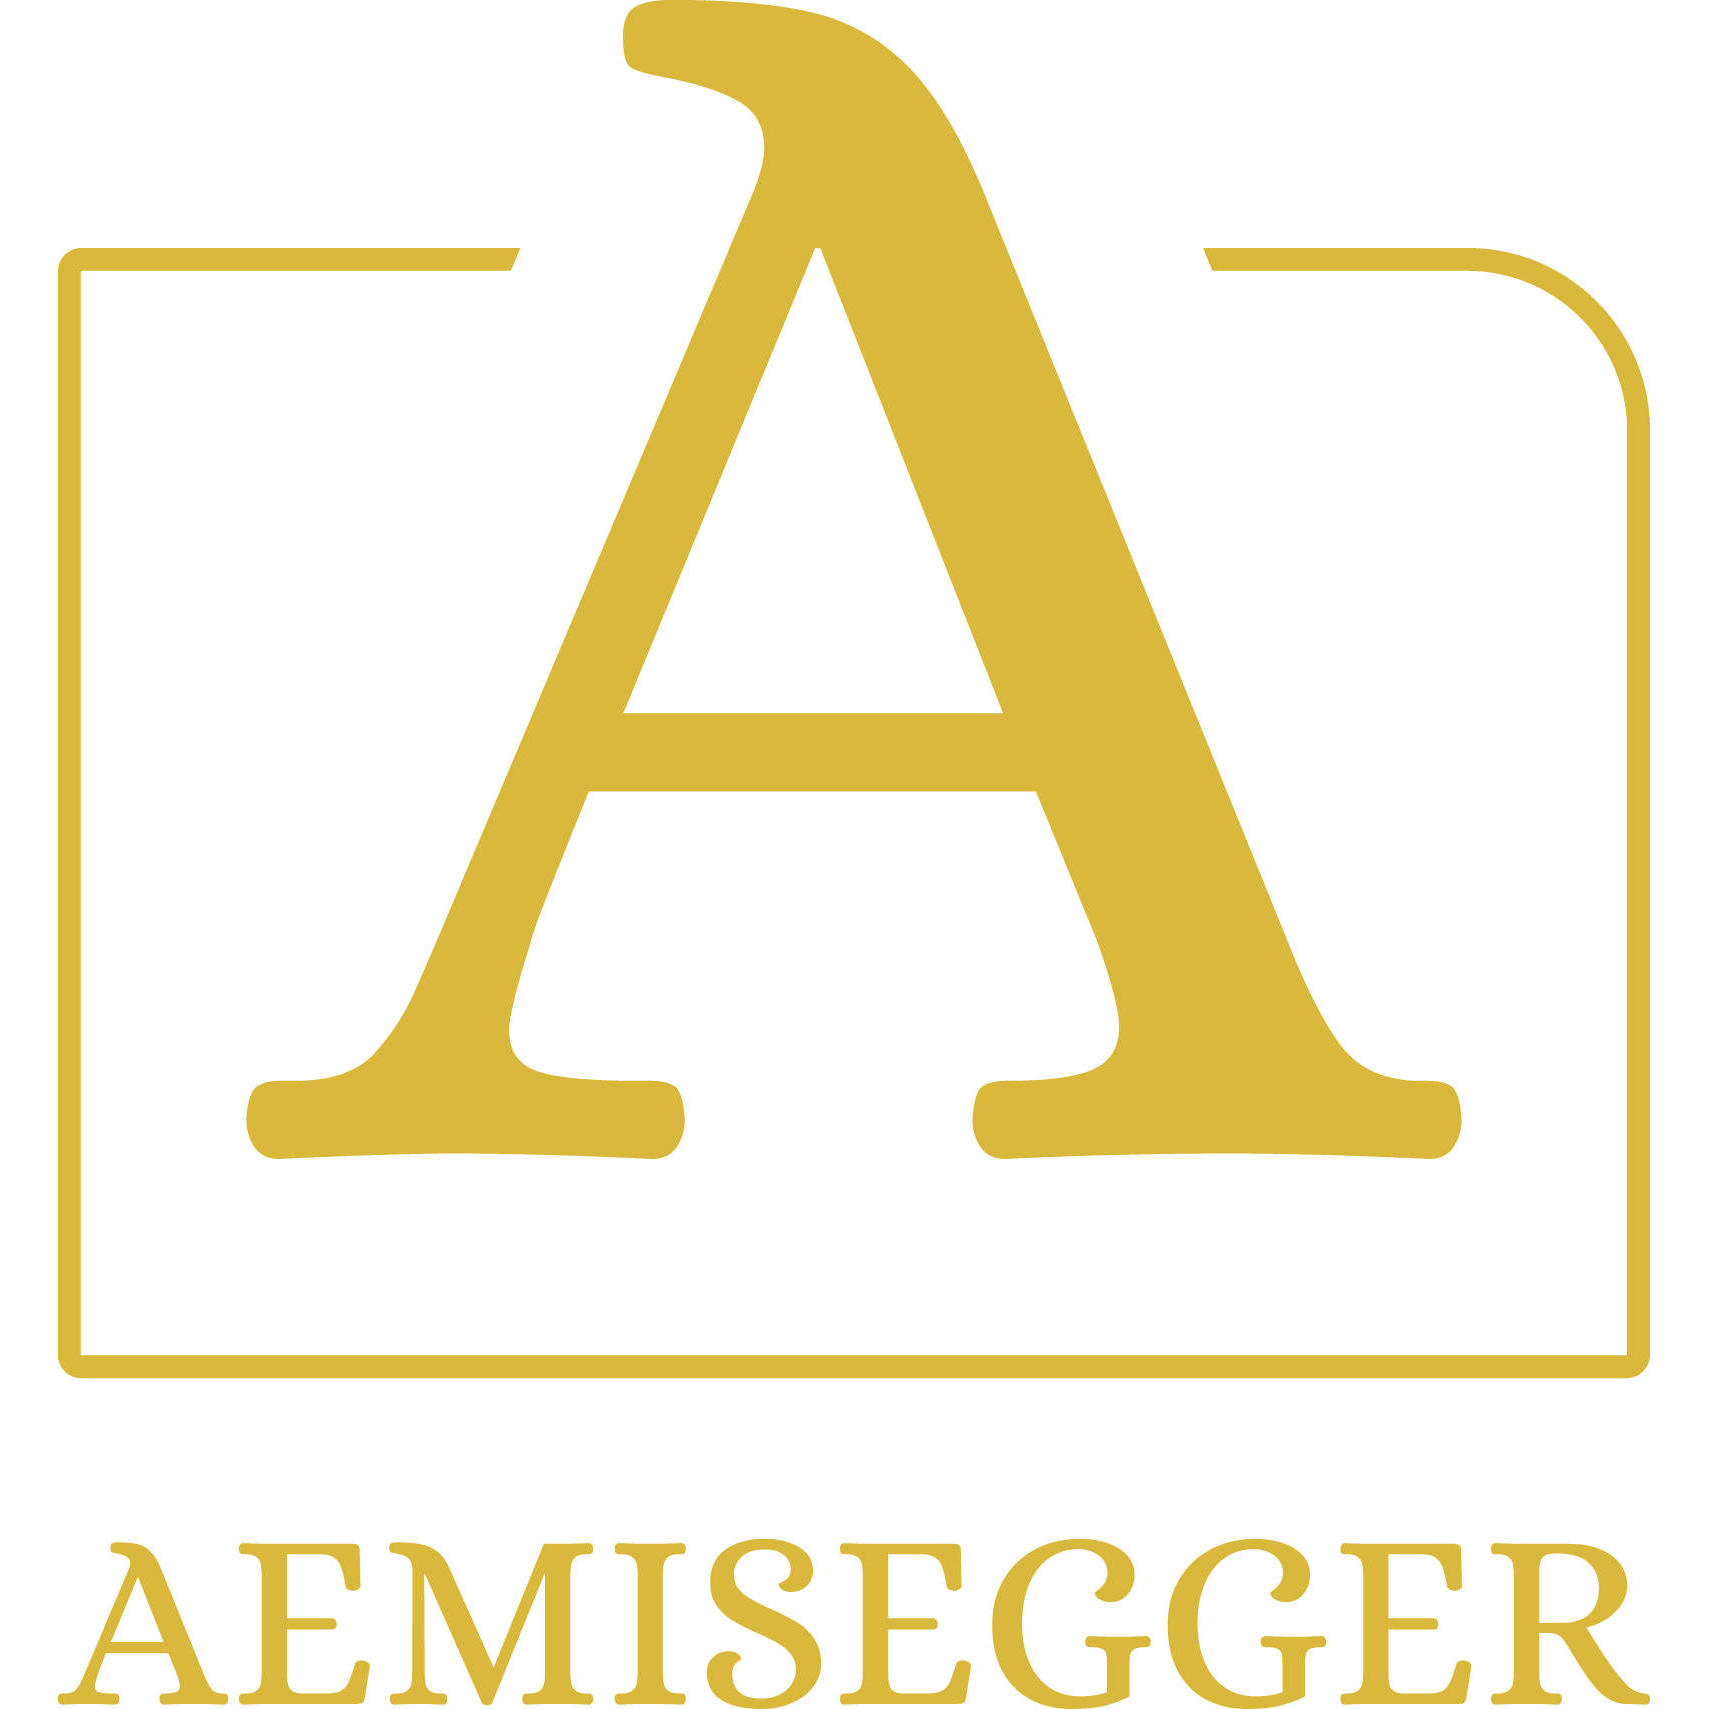 Aemisegger Apotheke Drogerie Kosmetik Logo